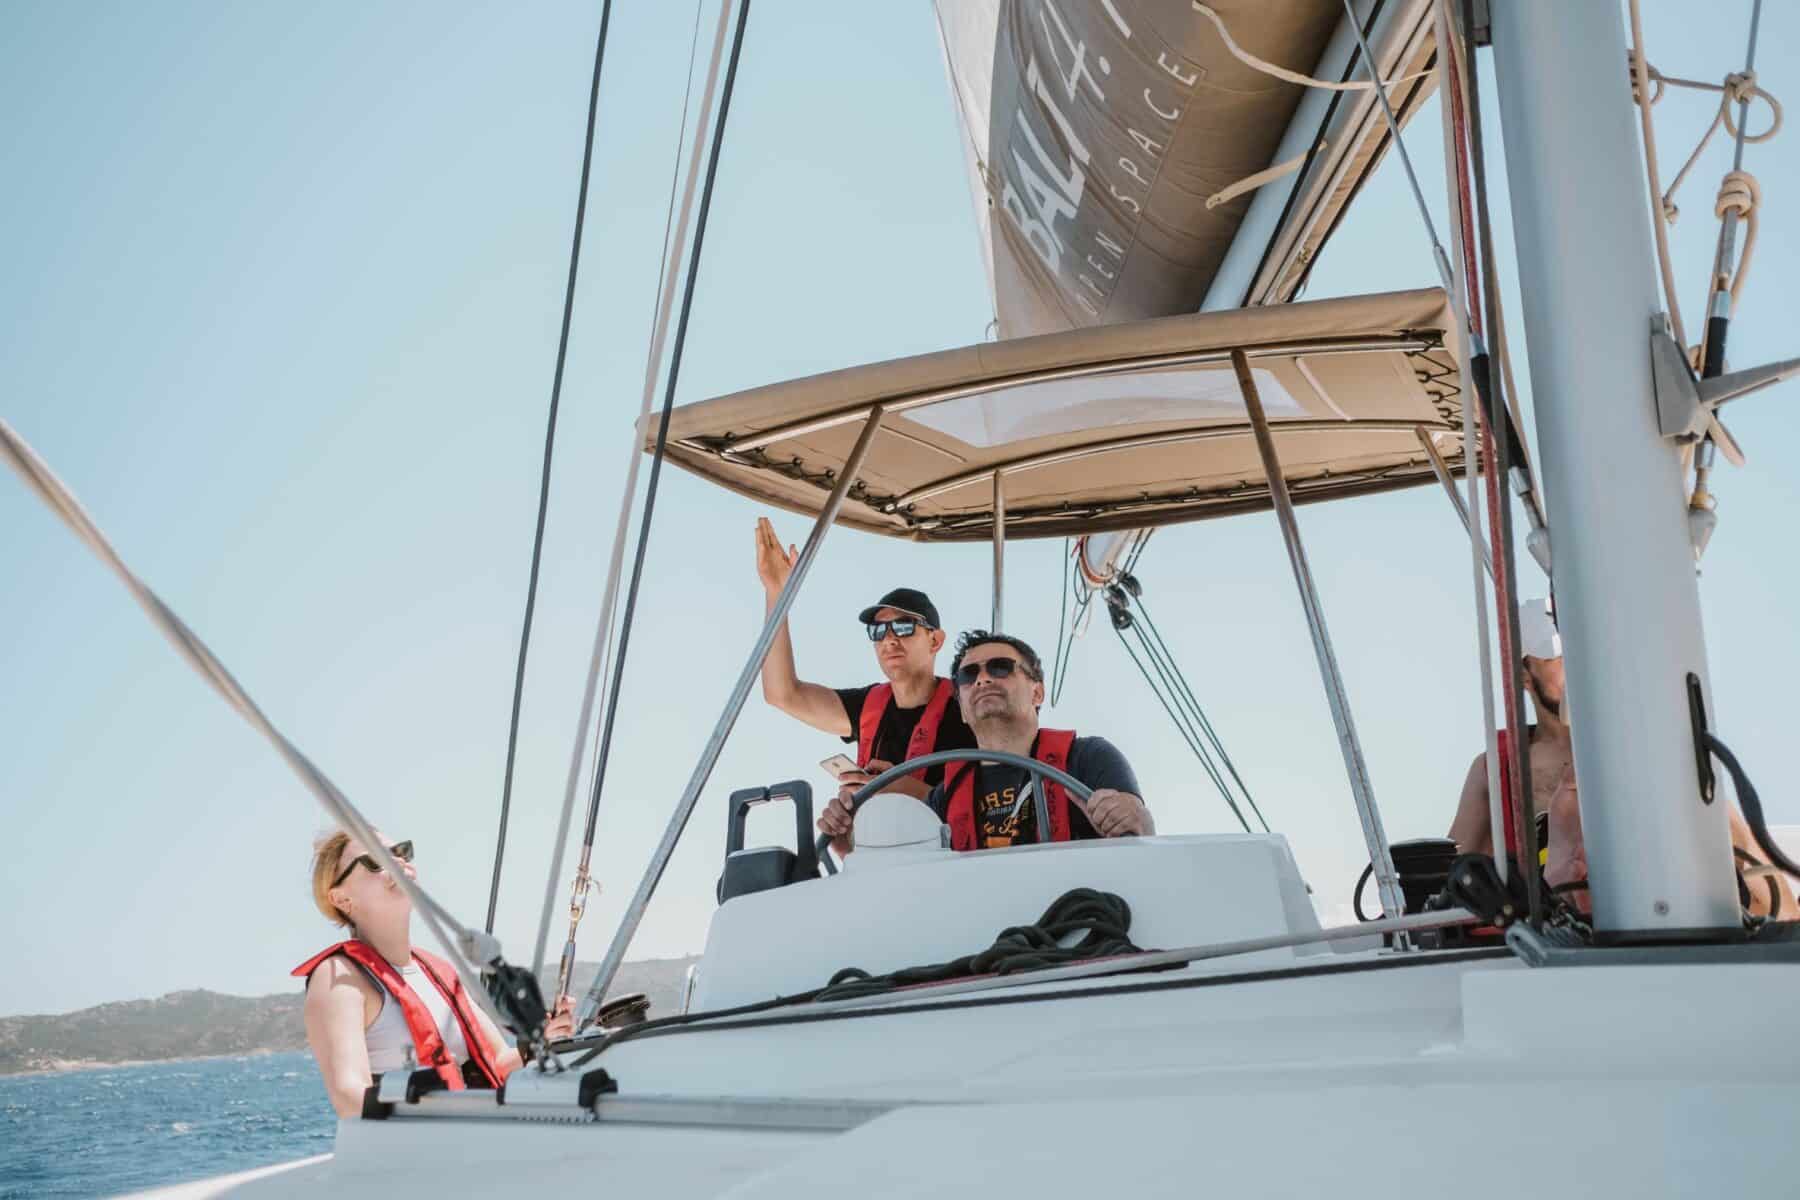 Drei Personen auf einer Segelyacht: Eine Frau mit Sonnenbrille deutet auf etwas in der Ferne, während ein Mann das Boot steuert und eine andere Frau zusieht. Klarer Himmel und blaues Wasser umgeben sie.